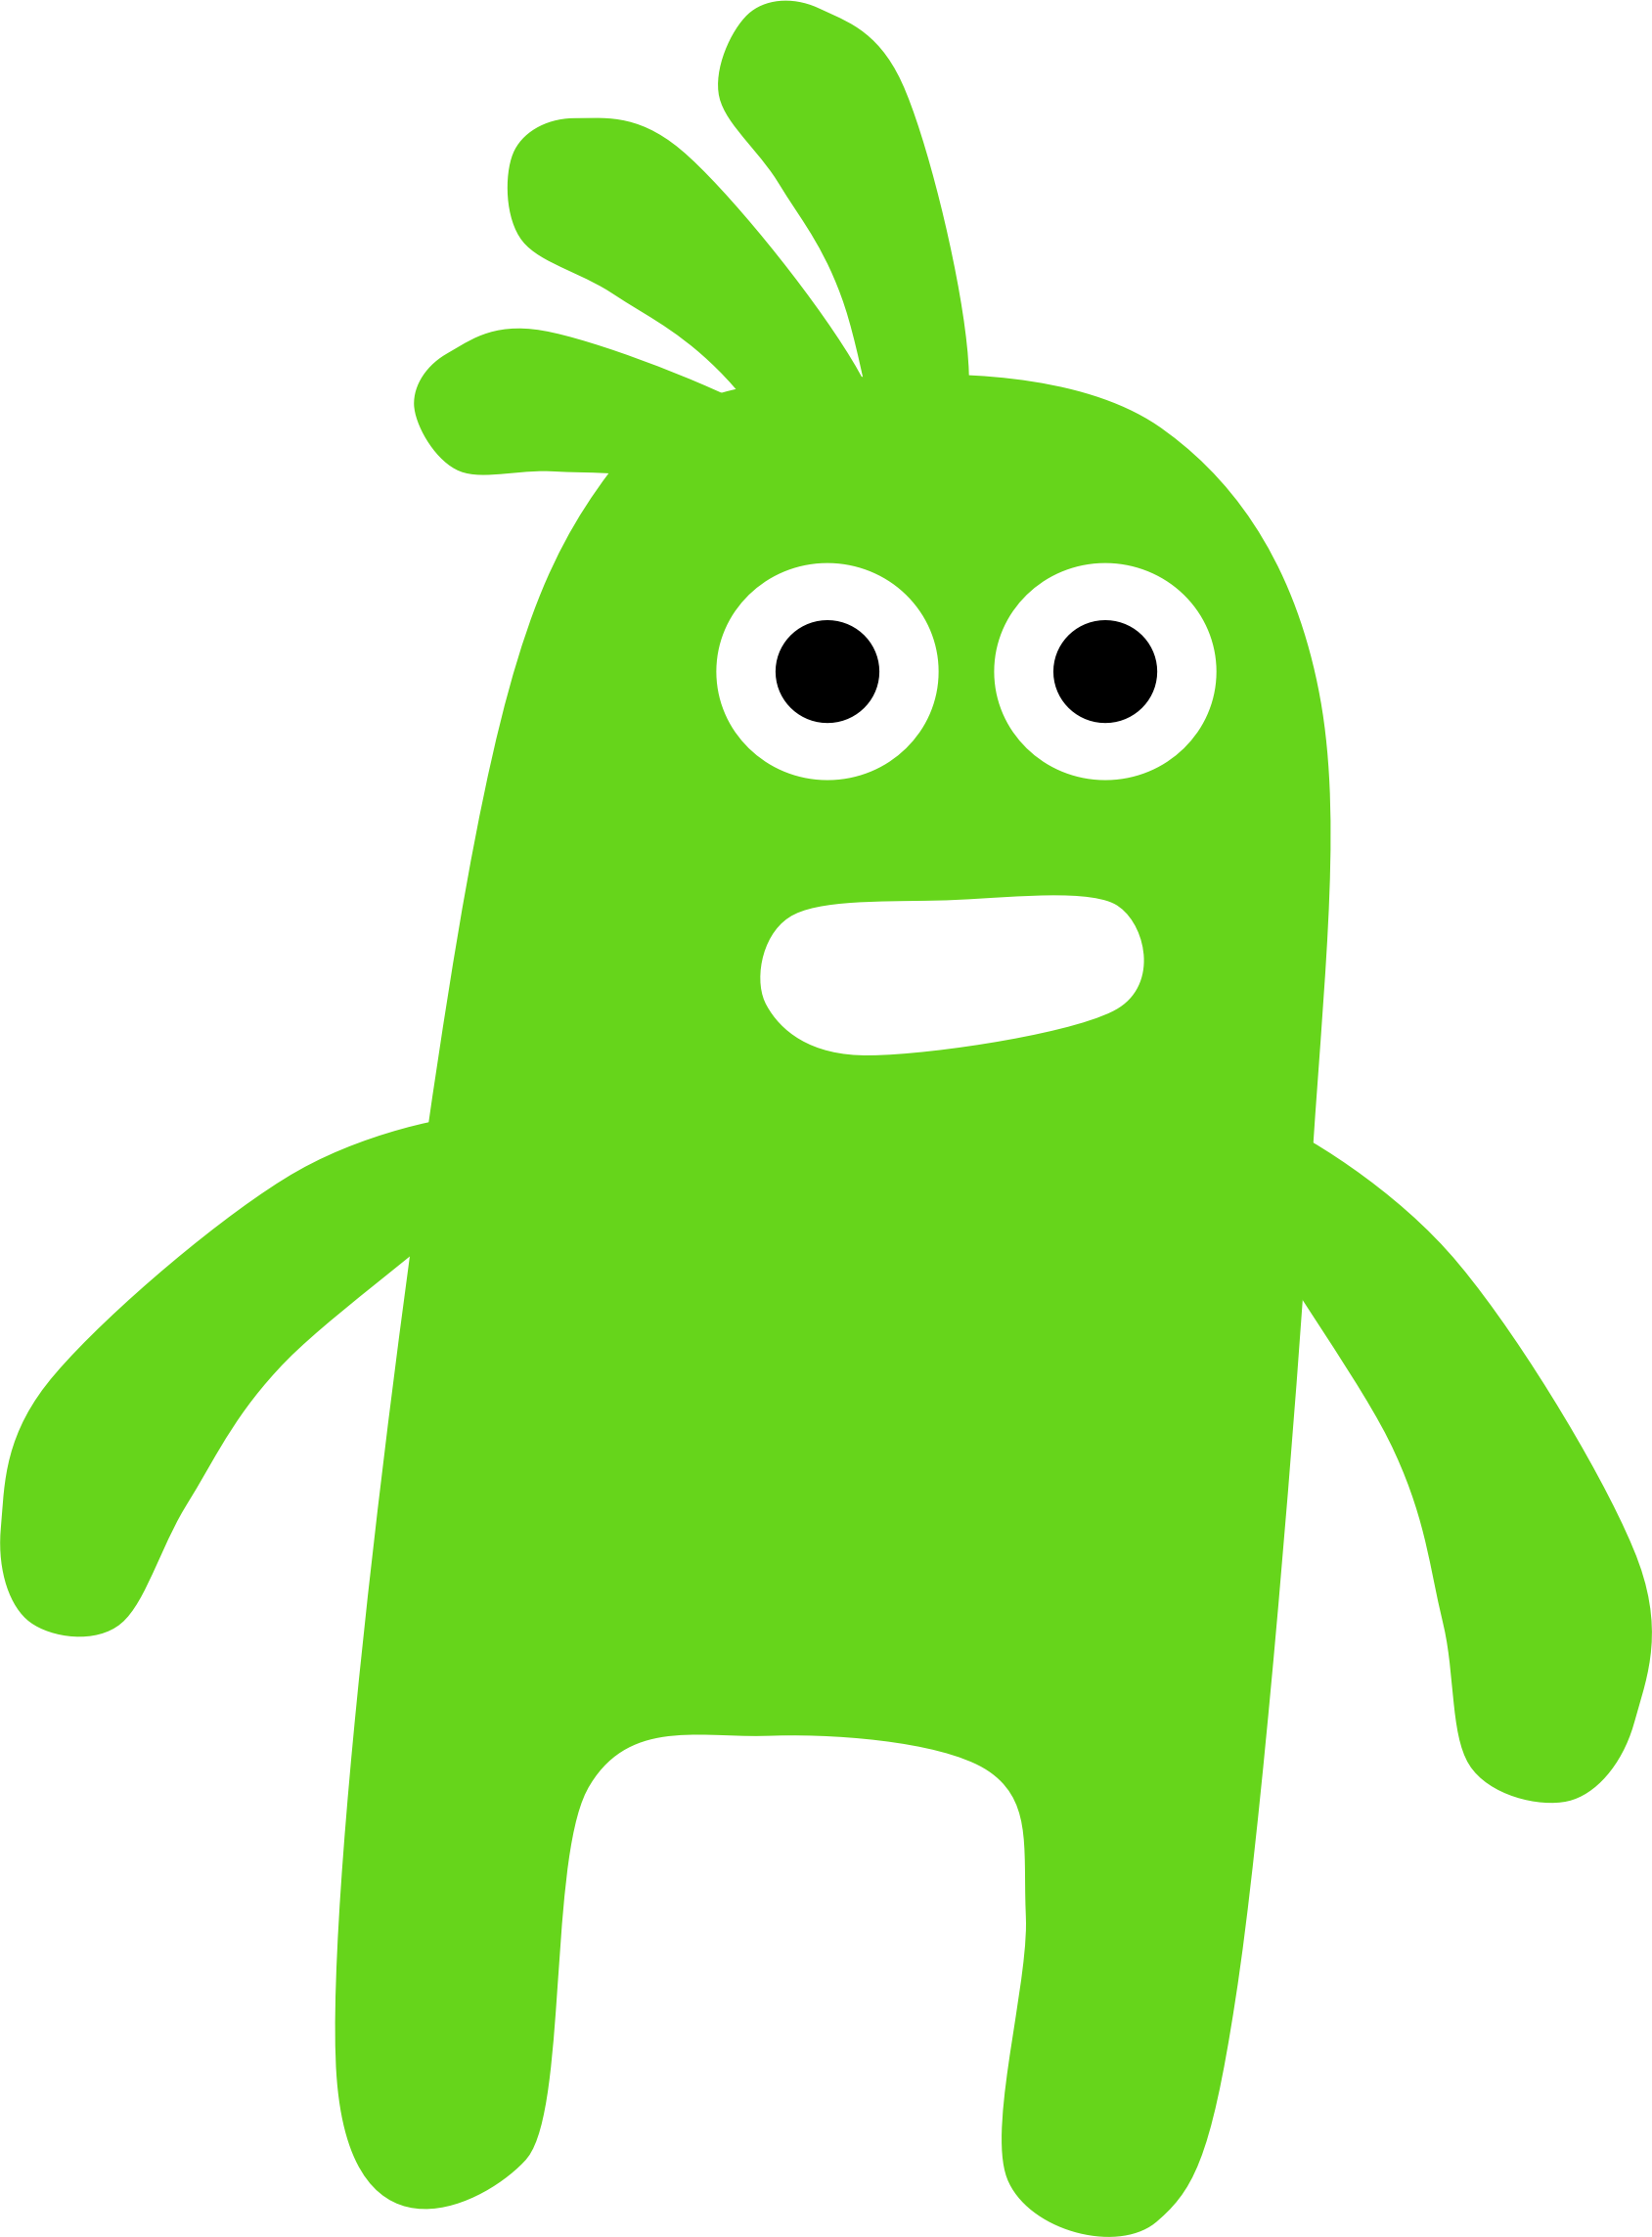 A Worried Green Monster - Green Monster Clipart (1689x2287)